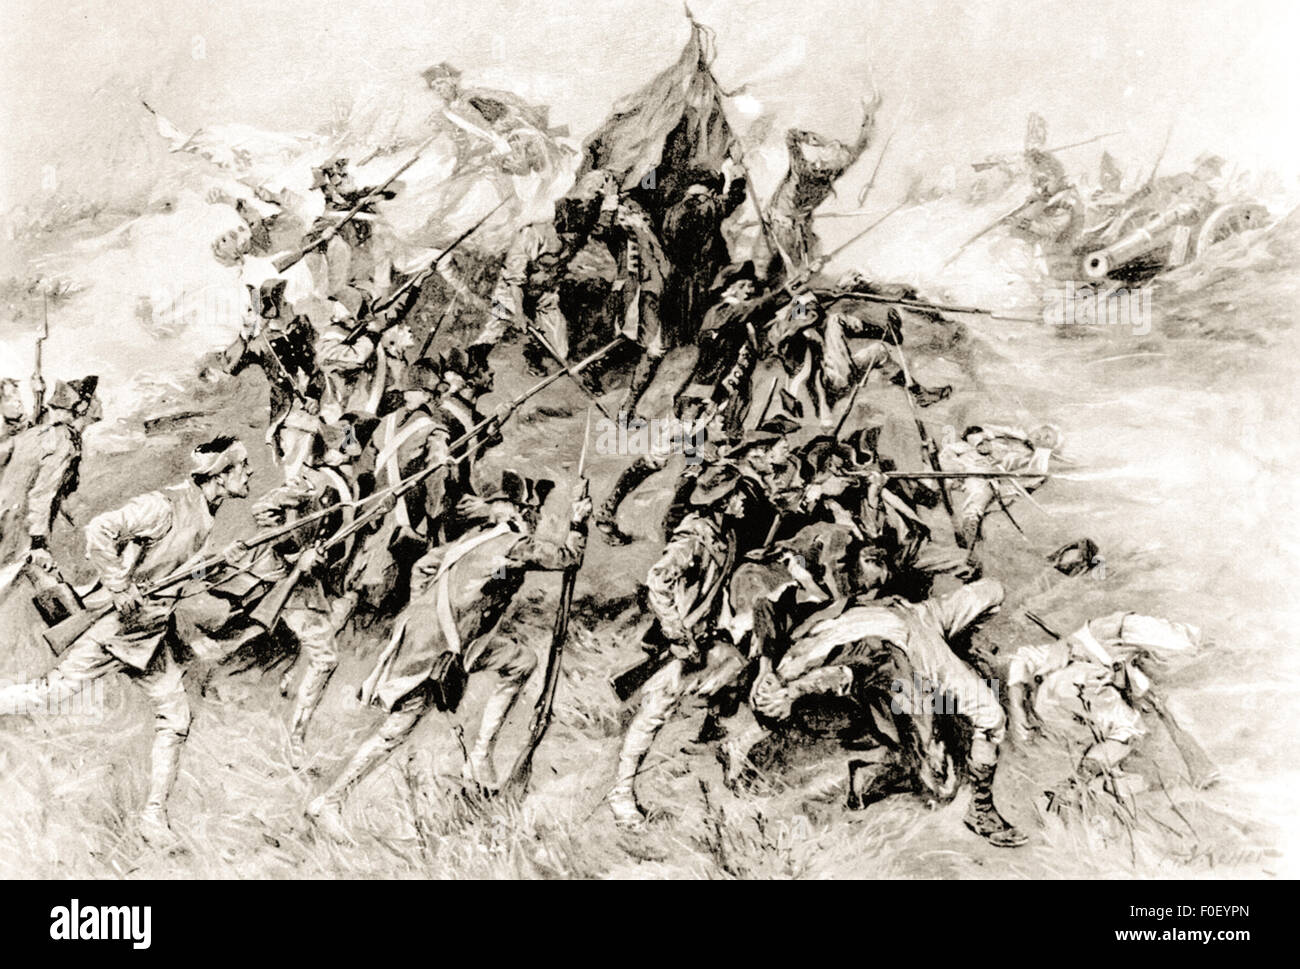 "Angriff auf Savannah" von Arthur I. Keller (1866-1924). Szene aus der zweiten Schlacht von Savannah, die am 8. Oktober 1779 während des amerikanischen Unabhängigkeitskrieges stattfand. Stockfoto